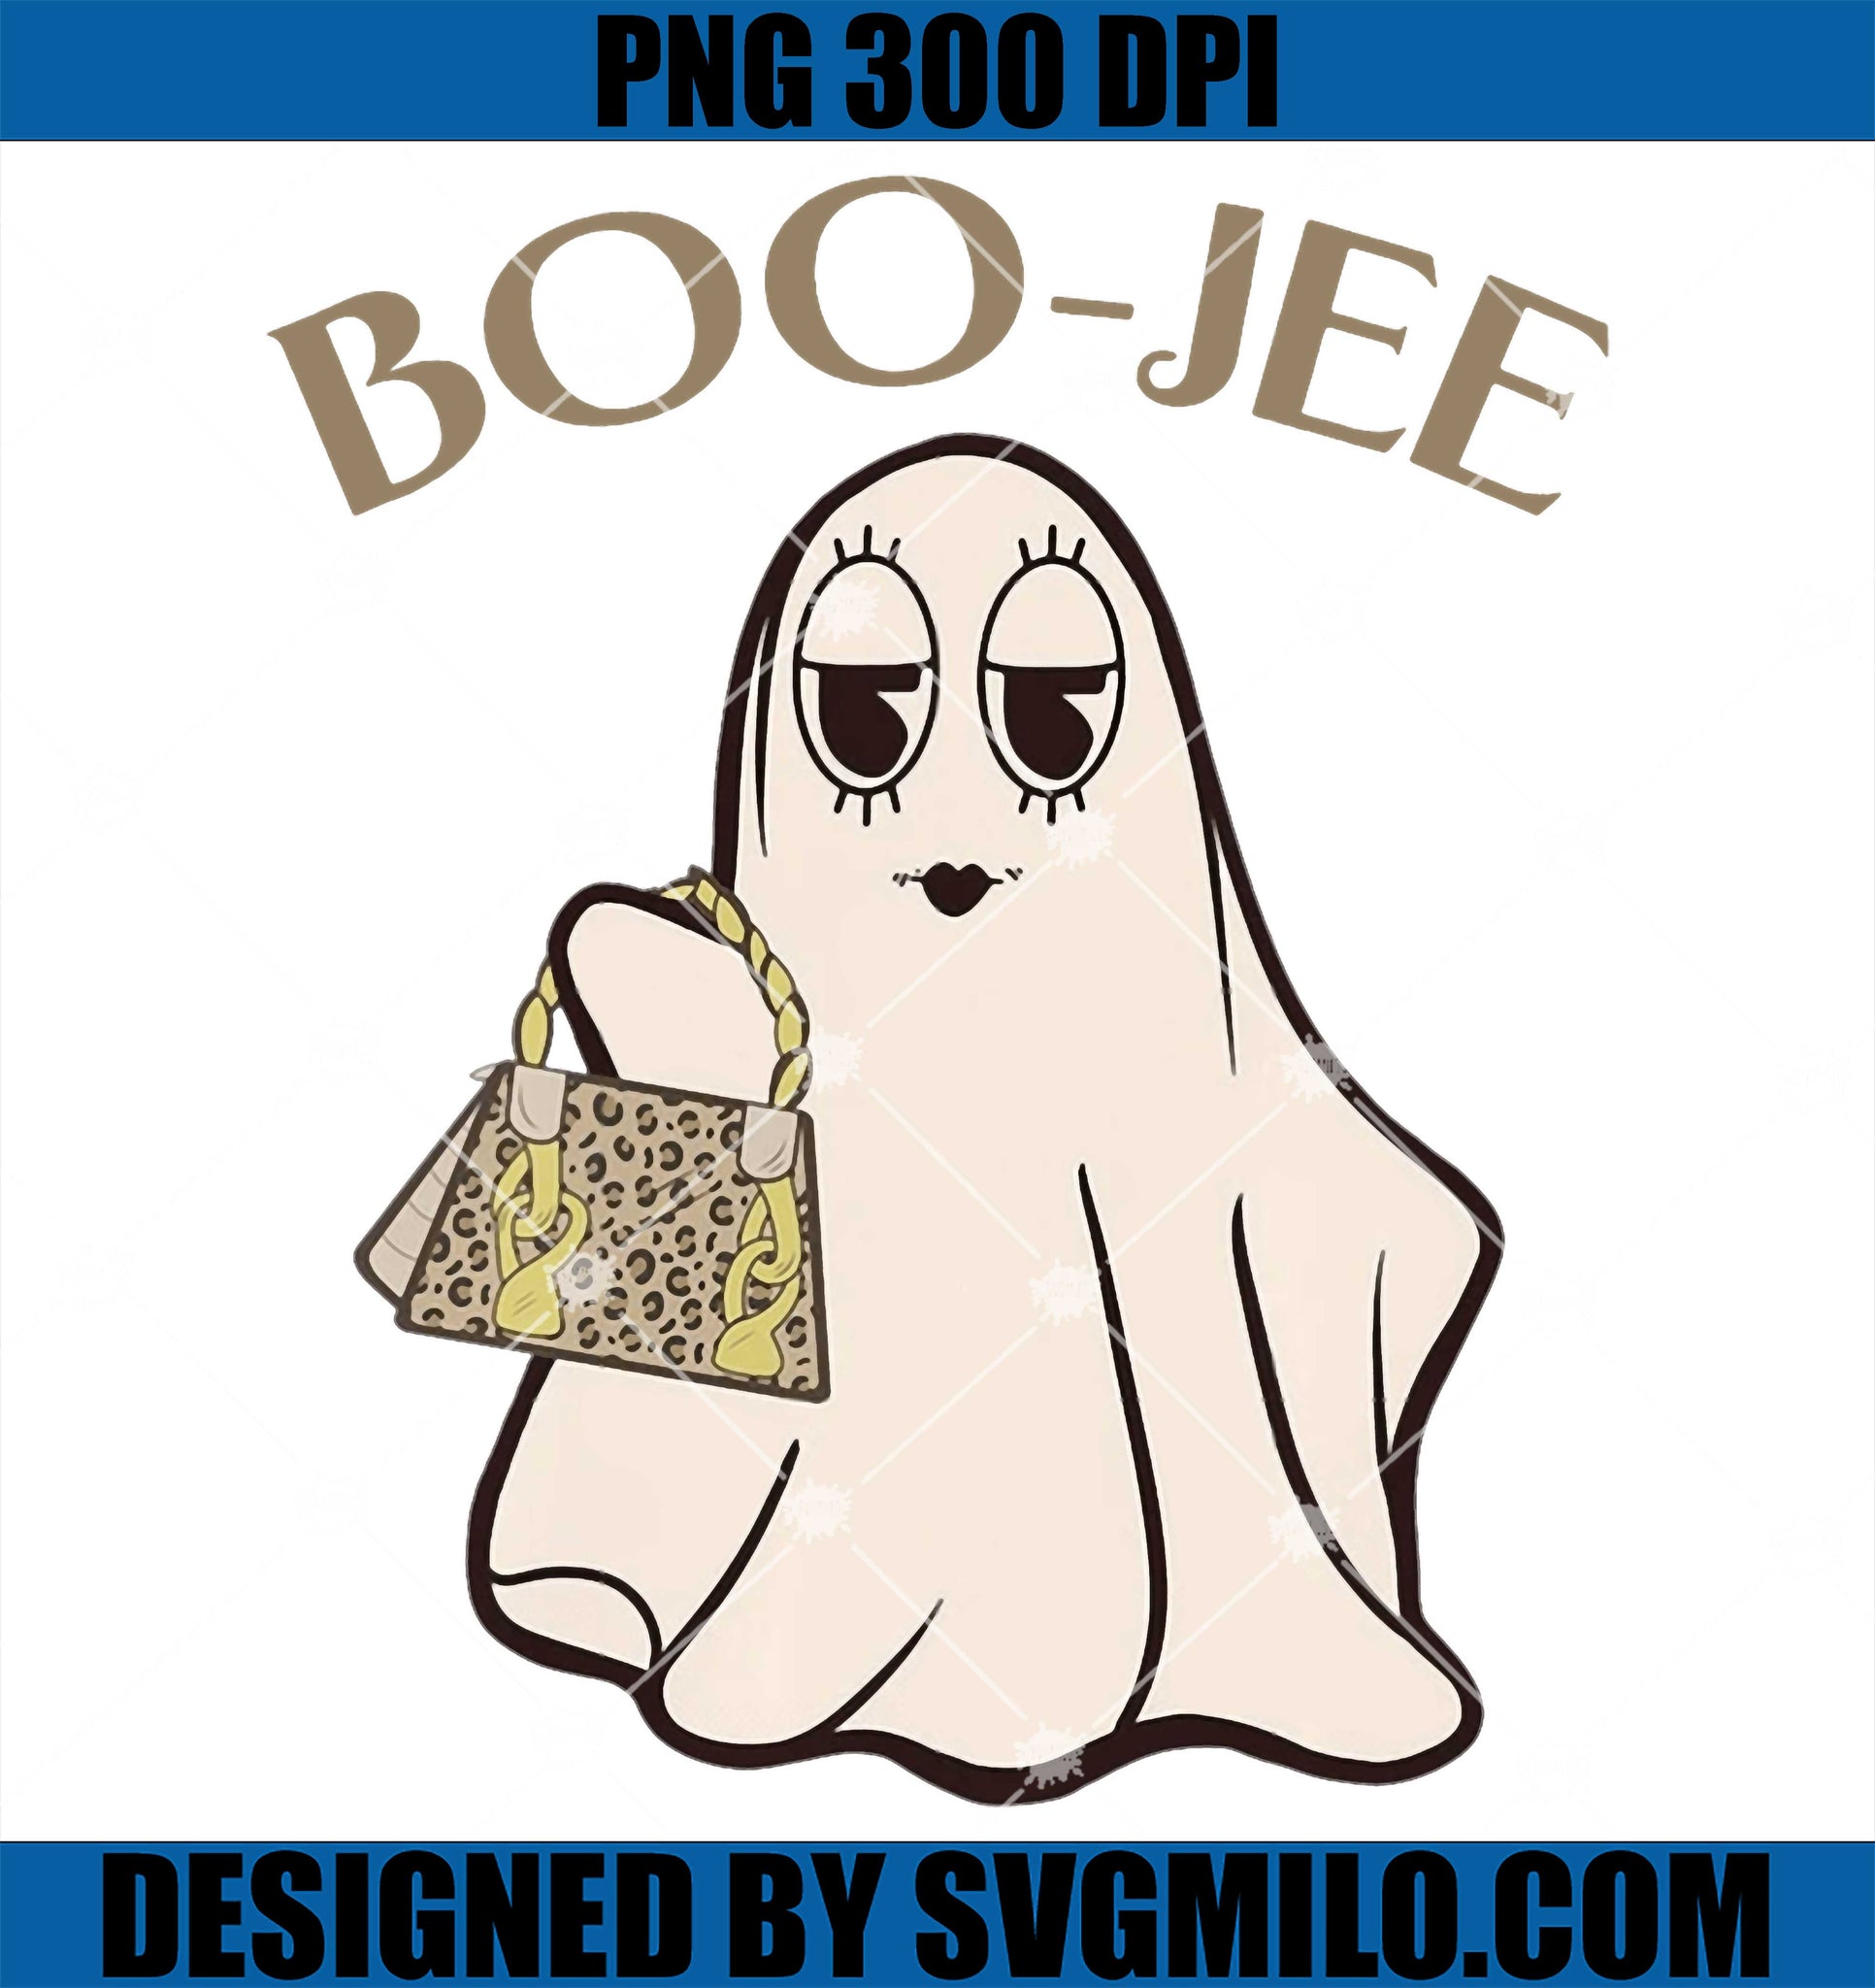 Spooky Season Cute Ghost Halloween PNG, Boujee Boo-Jee PNG